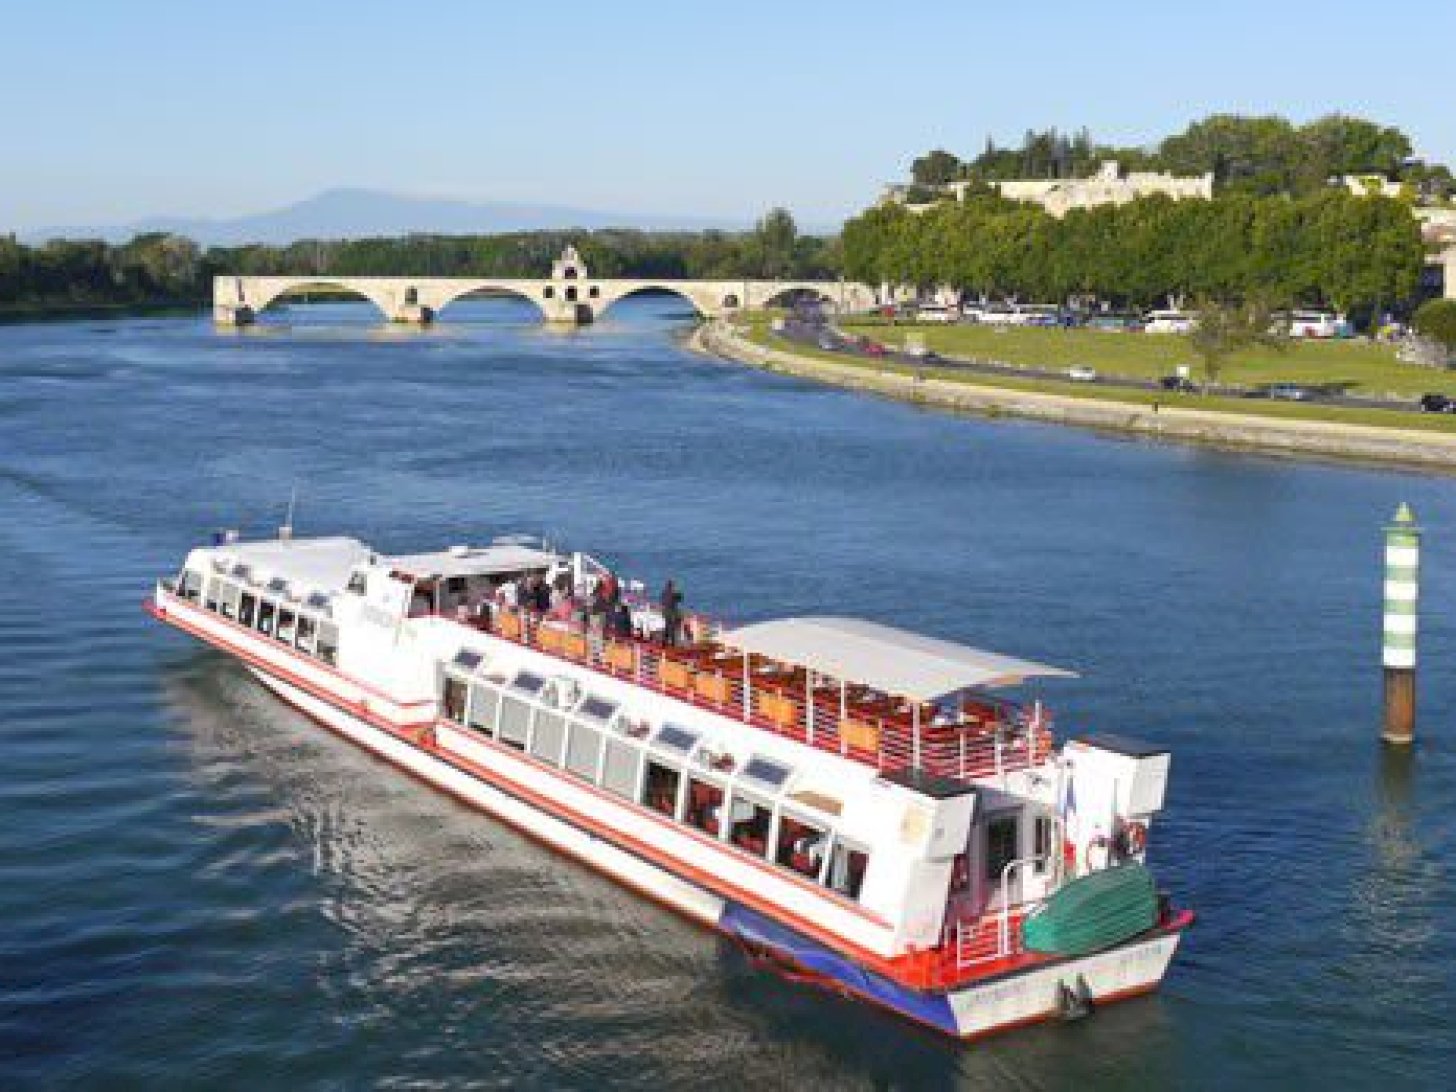 Shipelec tourisme fluvial